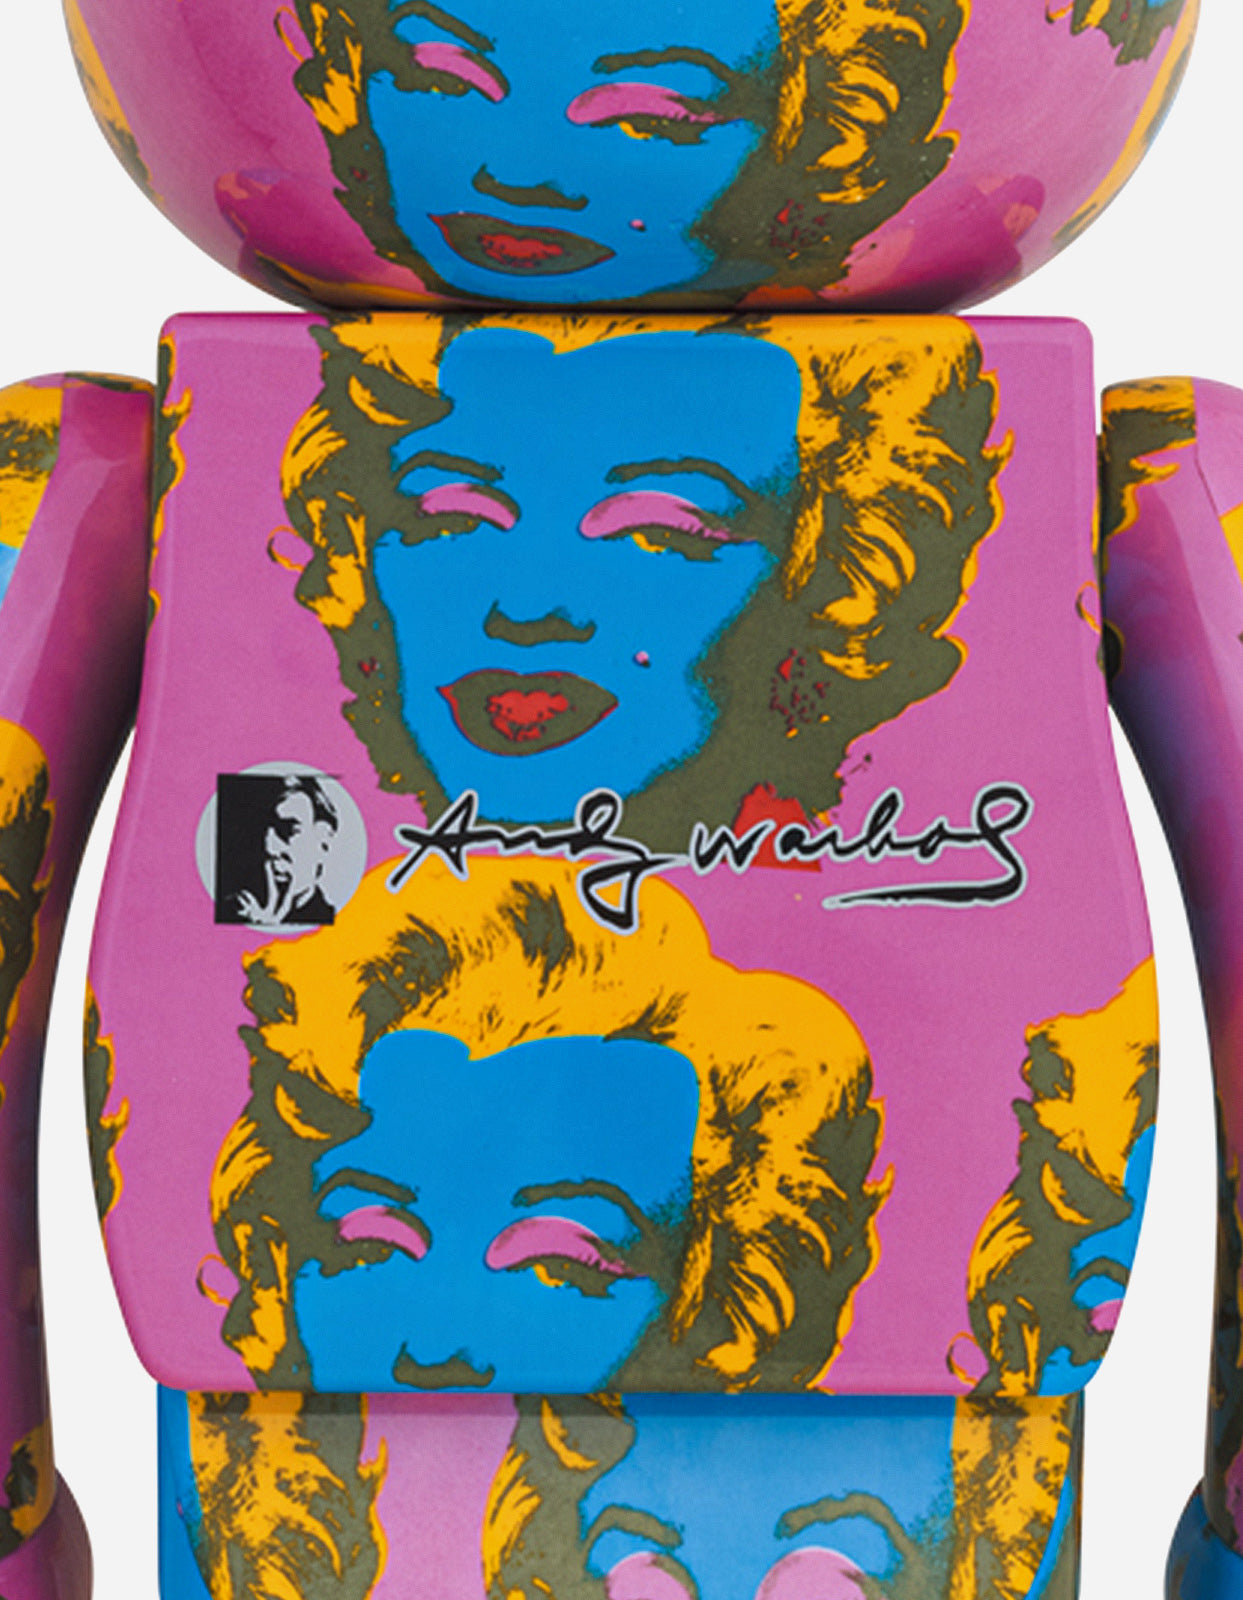 BE@RBRICK Andy Warhol Marilyn Monroe